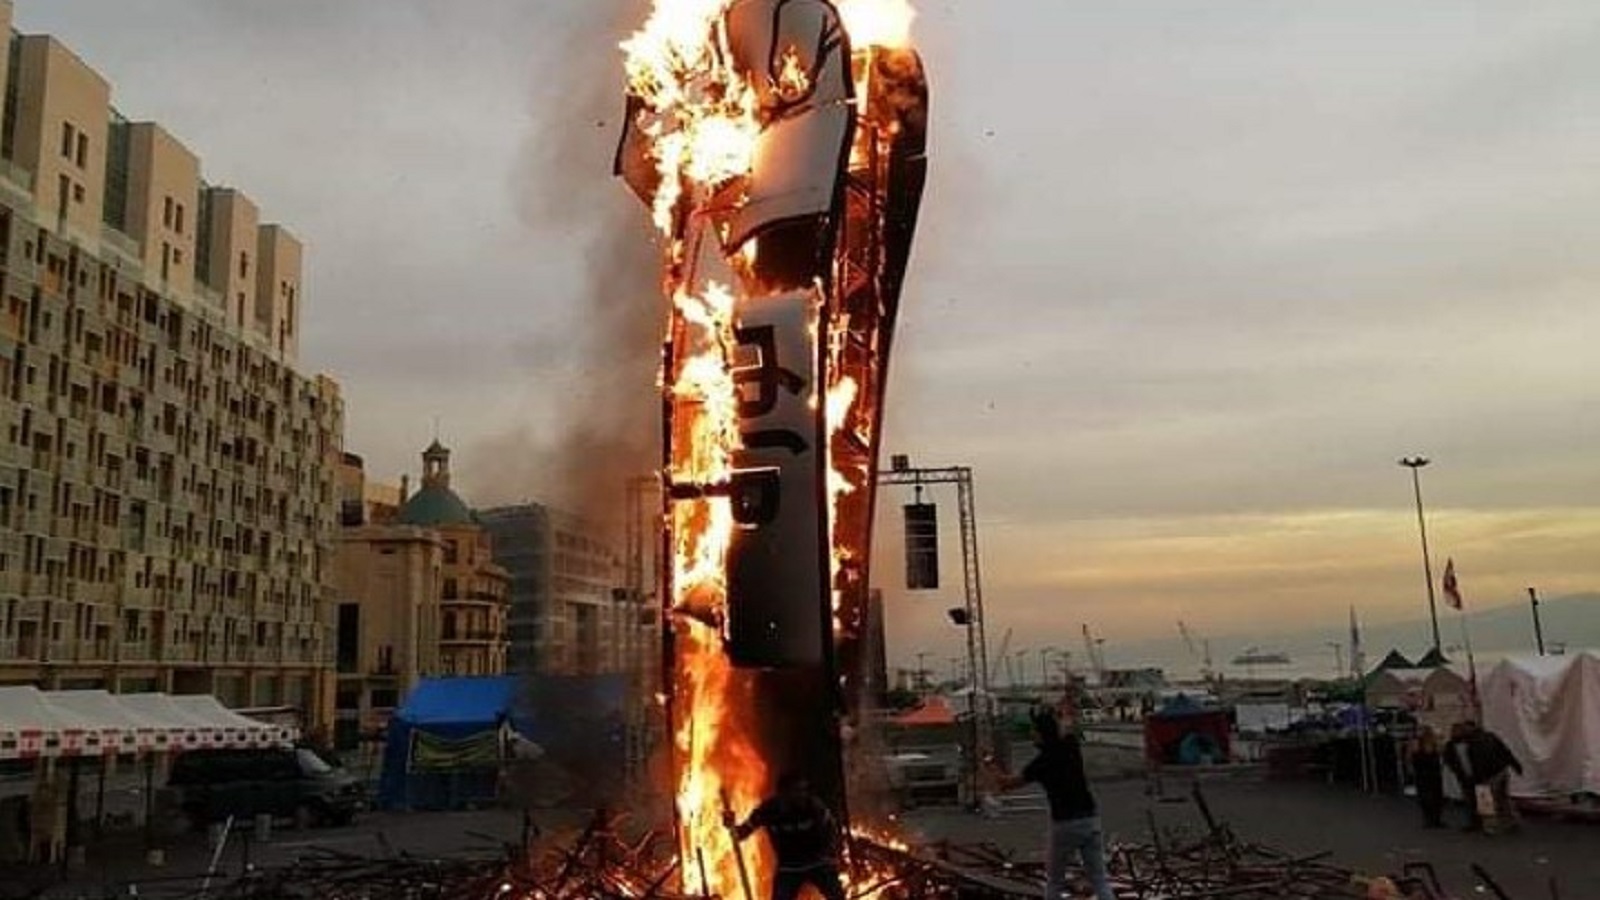 حرق مجسم الثورة.. اقتراح "الممانعة" لمستقبل لبنان